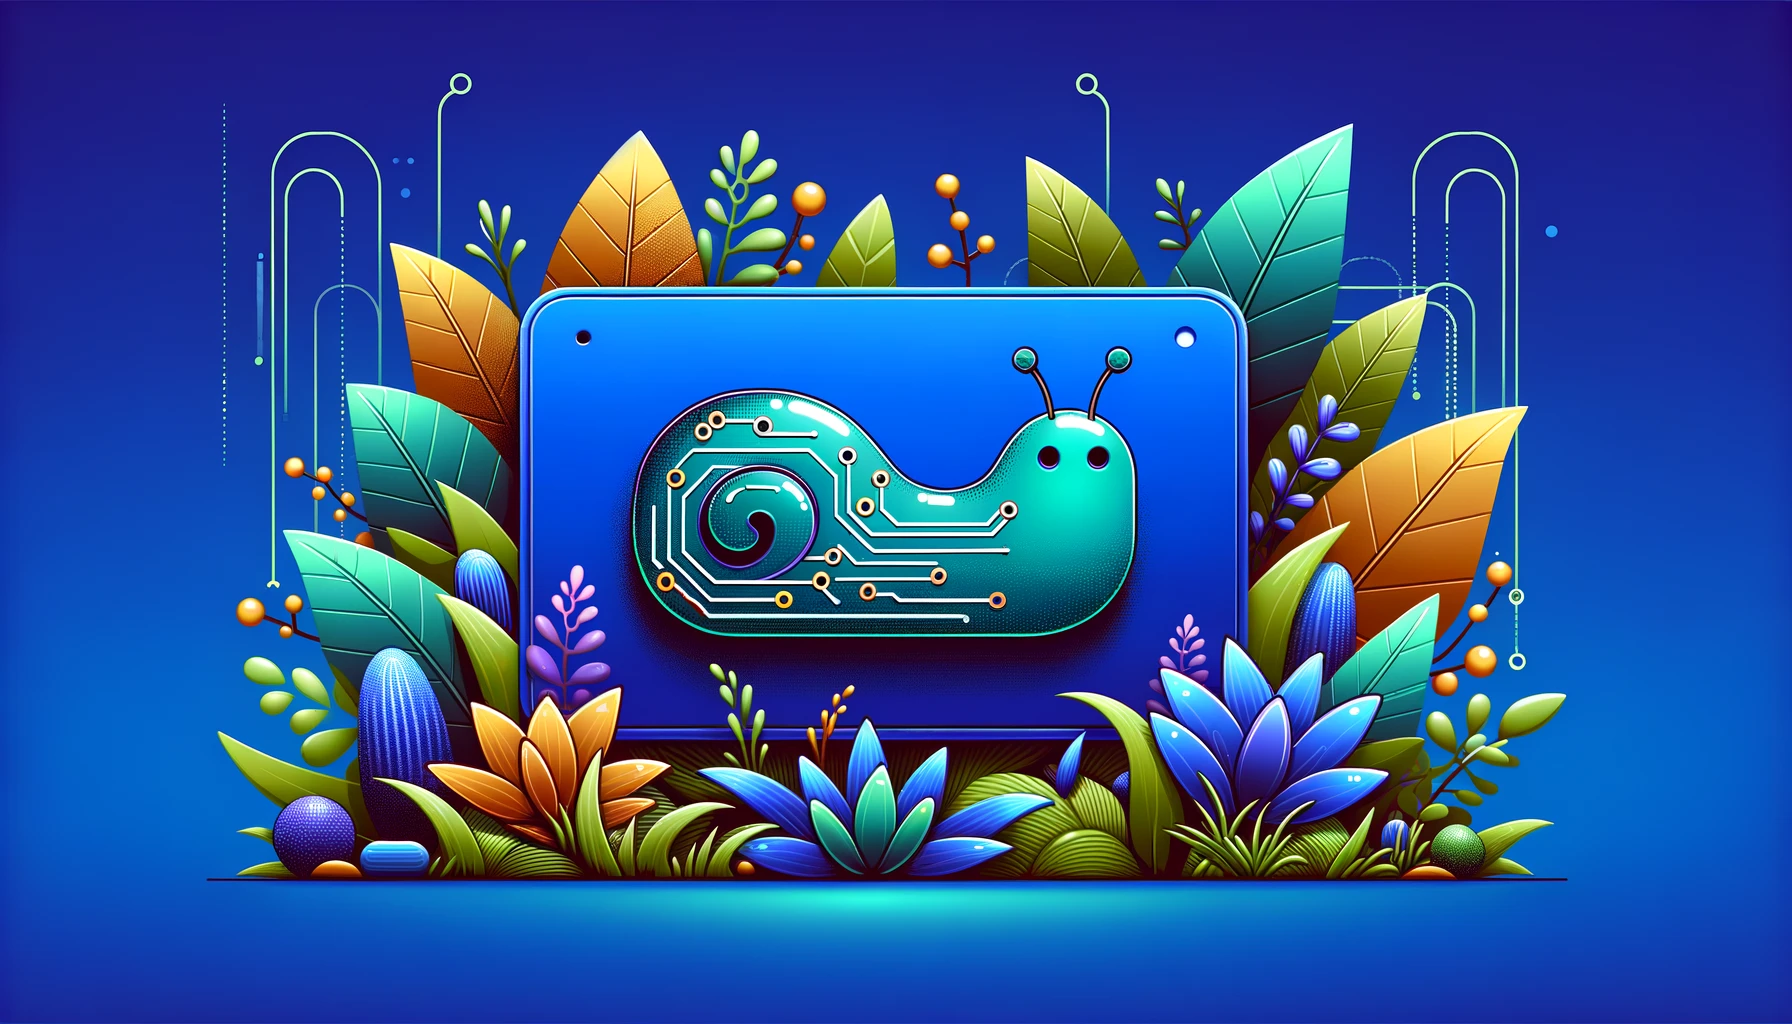 url slug featured image - techno slug illustration